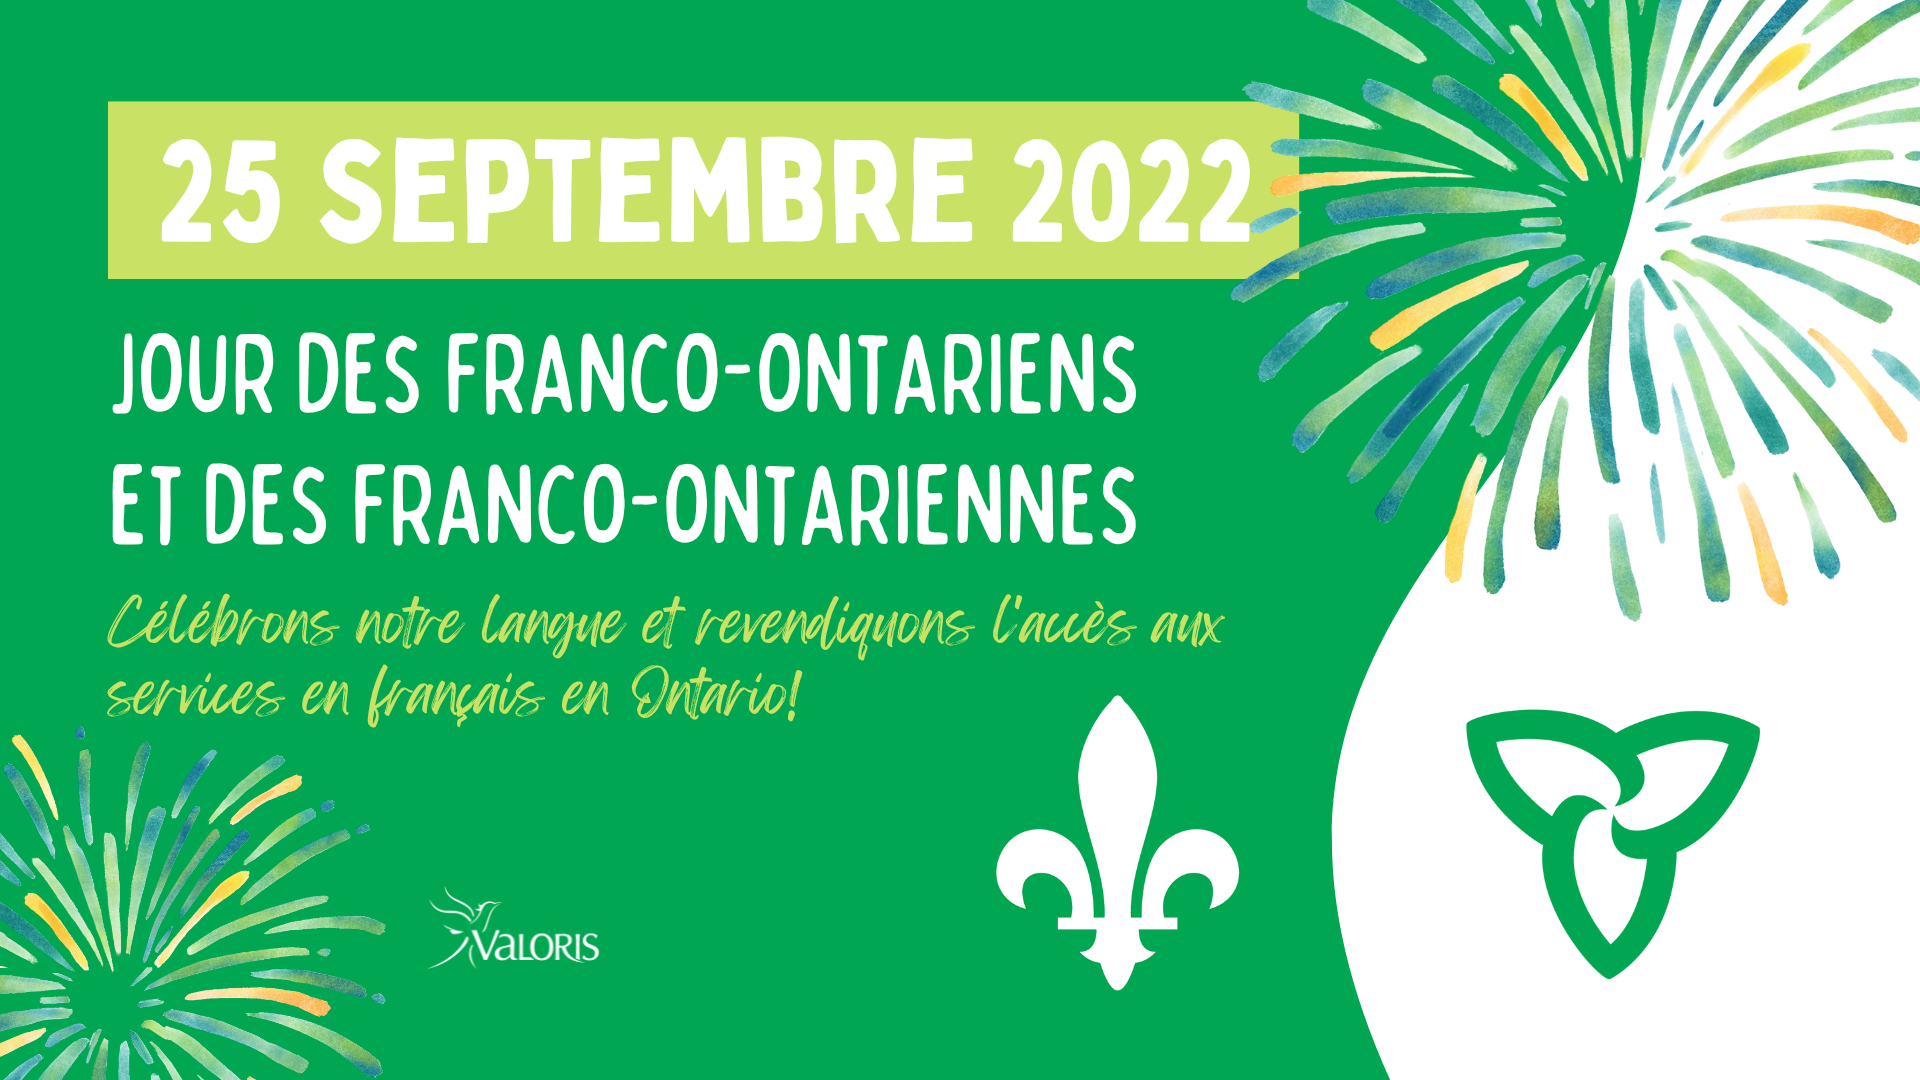 Image aux couleurs du drapeau franco-ontarien incluant ce texte : 25 septembre 2022 - Jour des Franco-ontariens et des Franco-ontariennes - Célébrons notre langue et revendiquons l'accès aux services en français en Ontario!